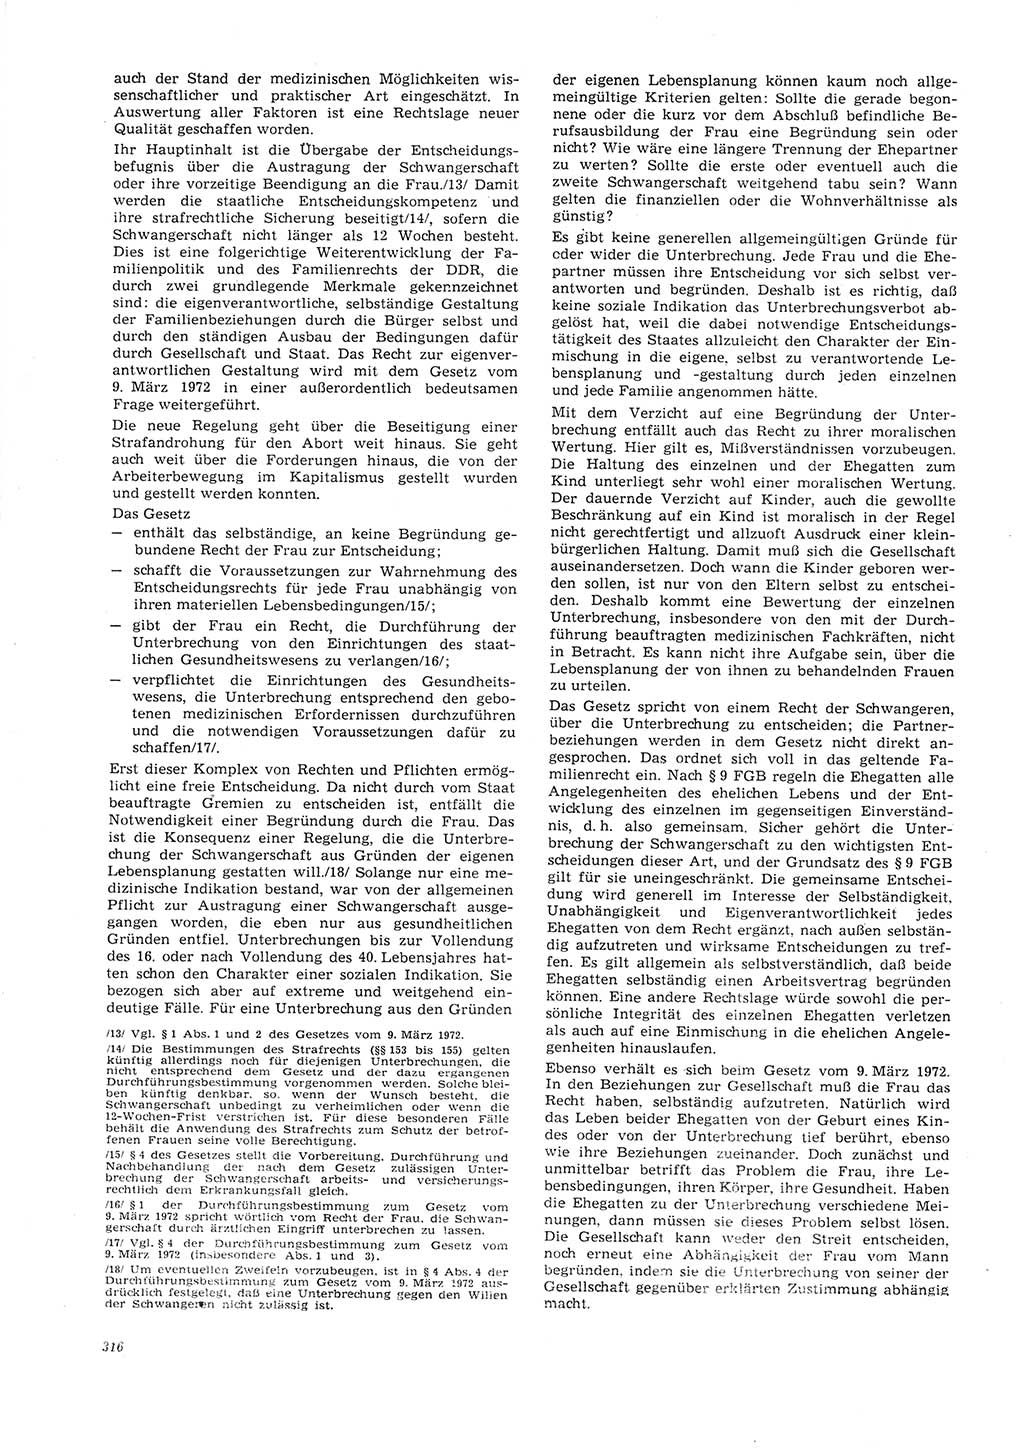 Neue Justiz (NJ), Zeitschrift für Recht und Rechtswissenschaft [Deutsche Demokratische Republik (DDR)], 26. Jahrgang 1972, Seite 316 (NJ DDR 1972, S. 316)